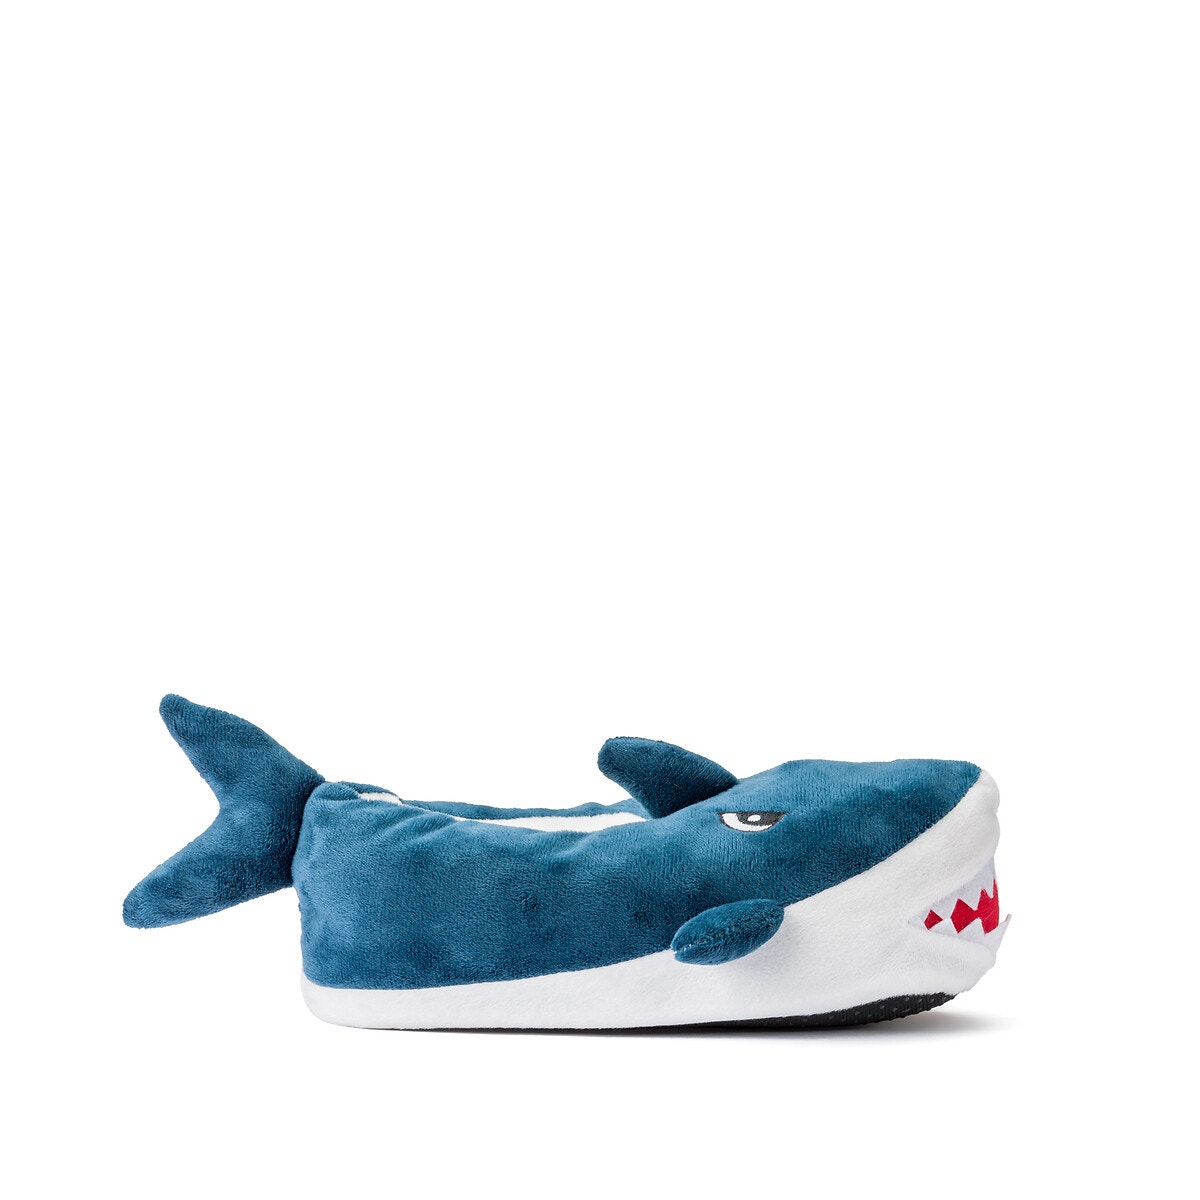 ΠΑΙΔΙ | Παπούτσια | Παντόφλες Παντοφλάκια σε σχήμα καρχαρία, 28|29-34|35